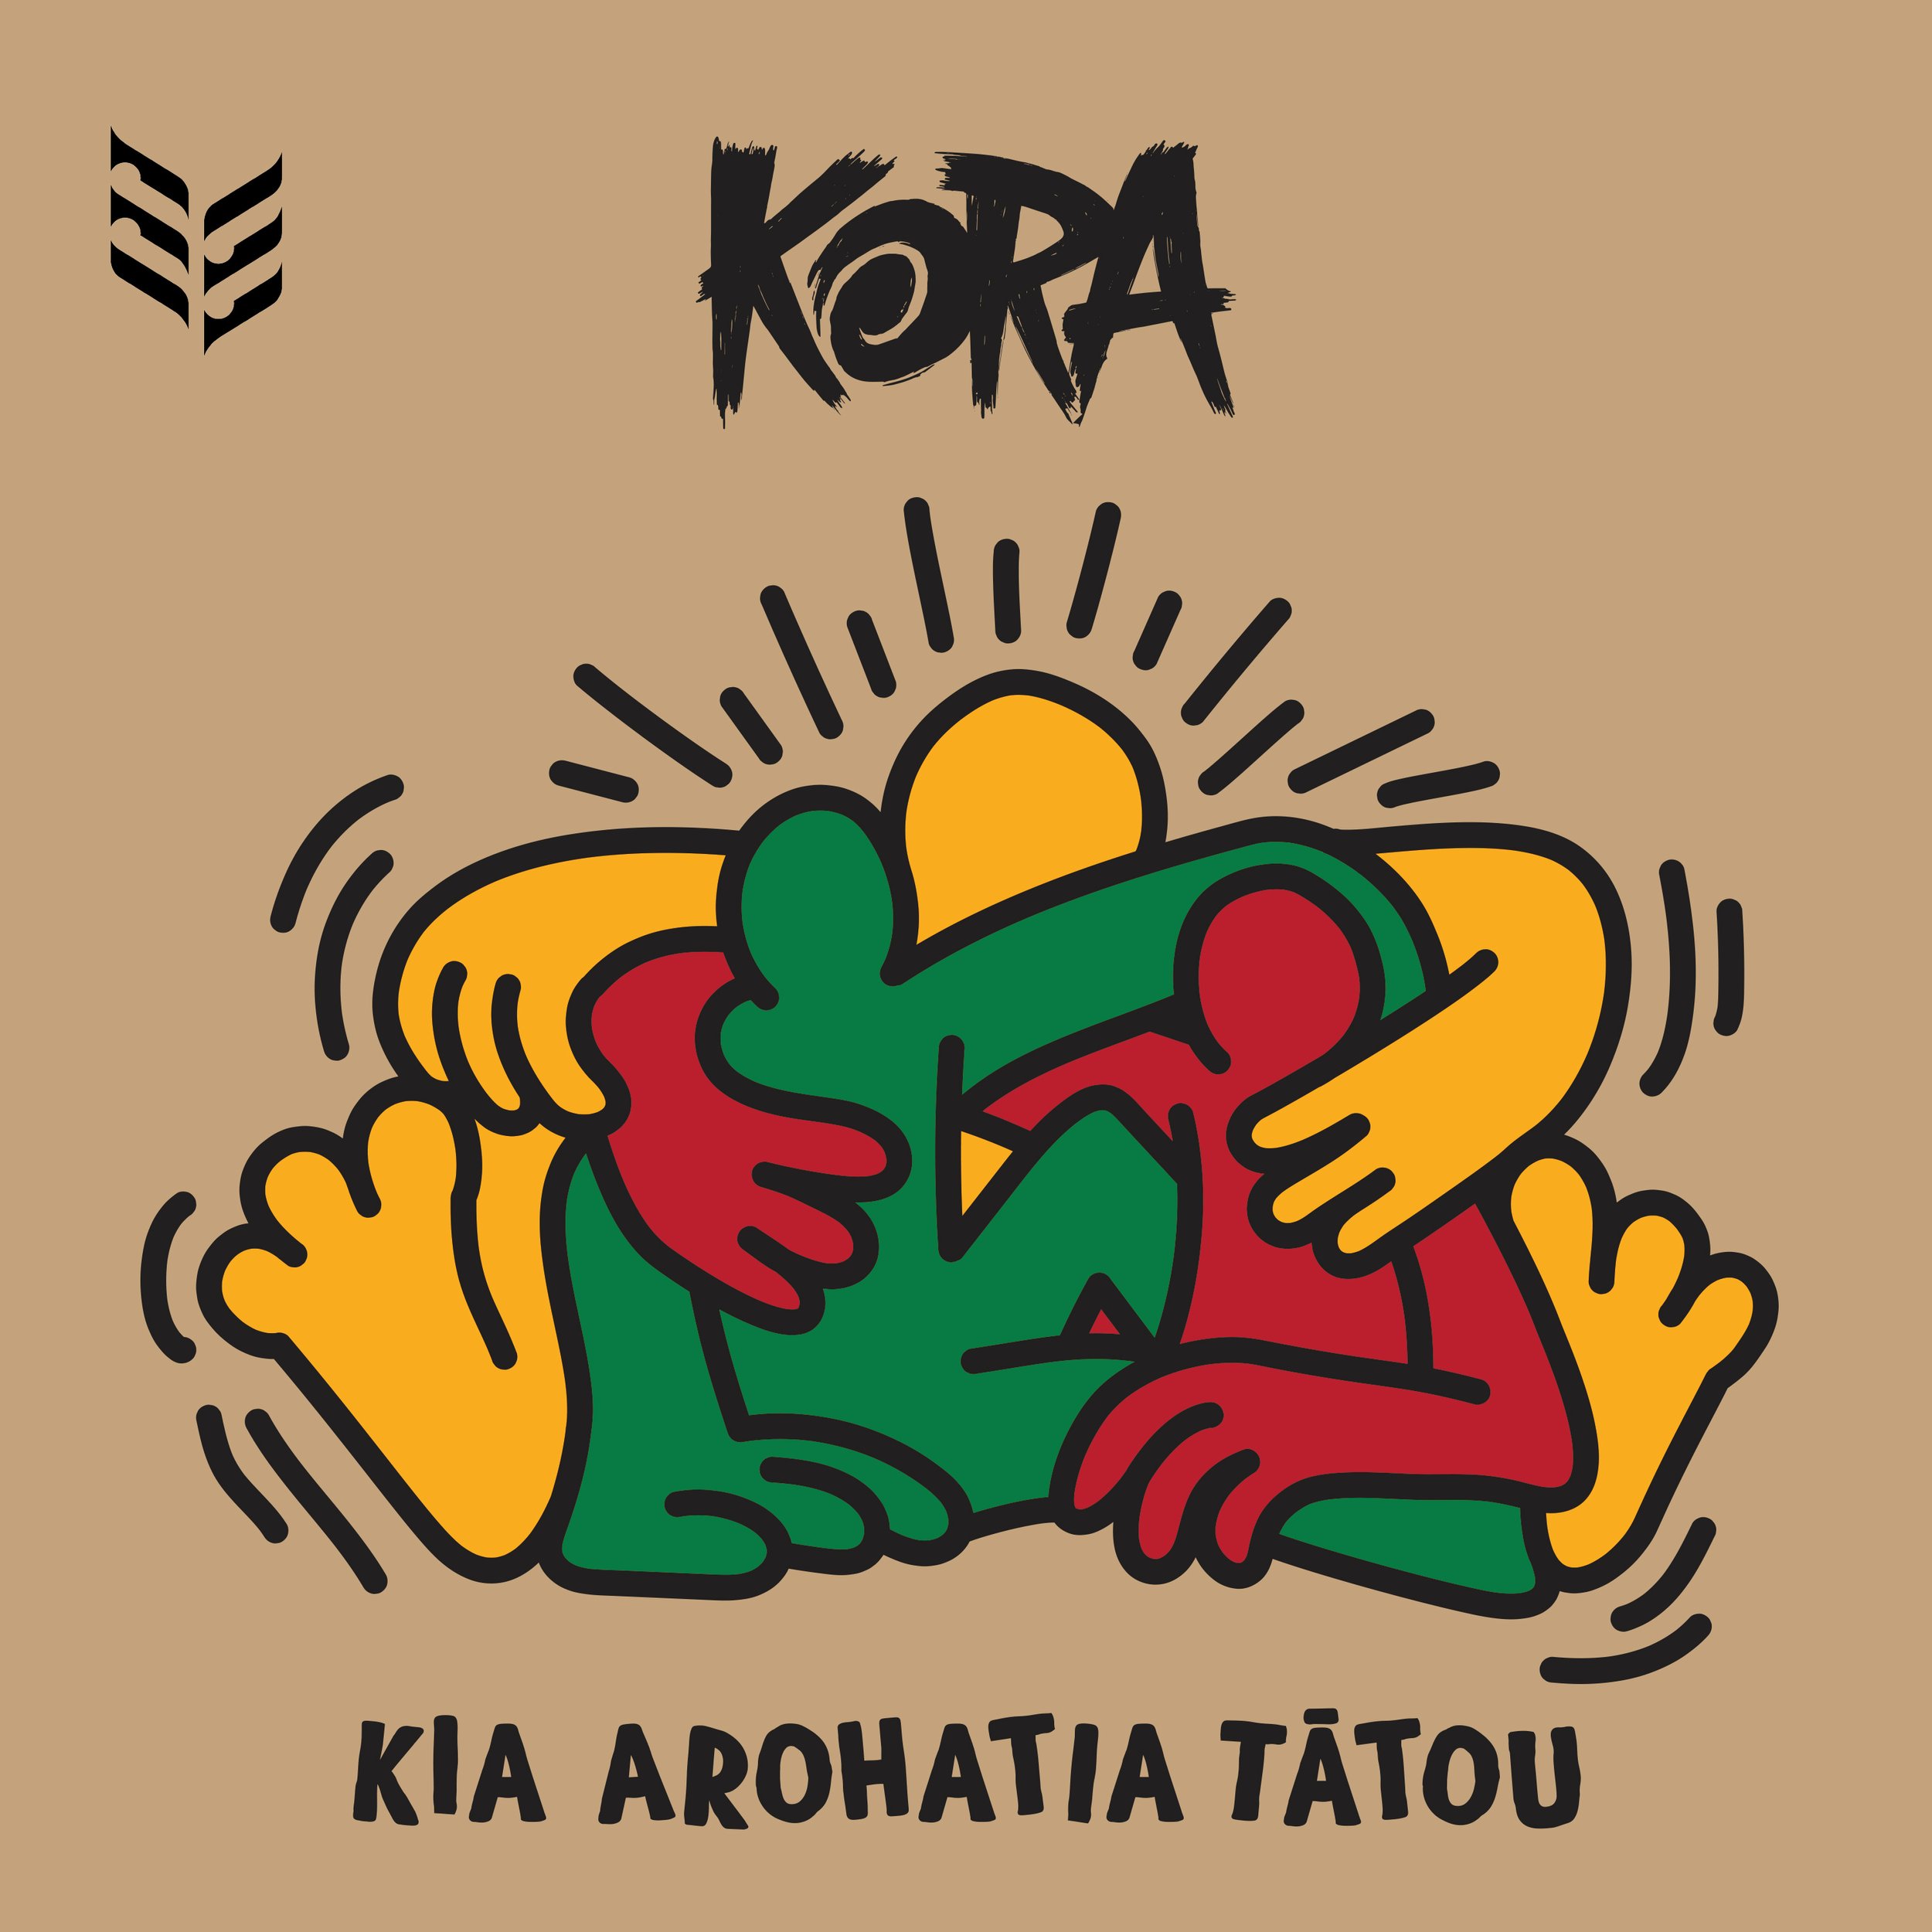 KORA-Kia-Arohatia-Tatou-3000px.jpg